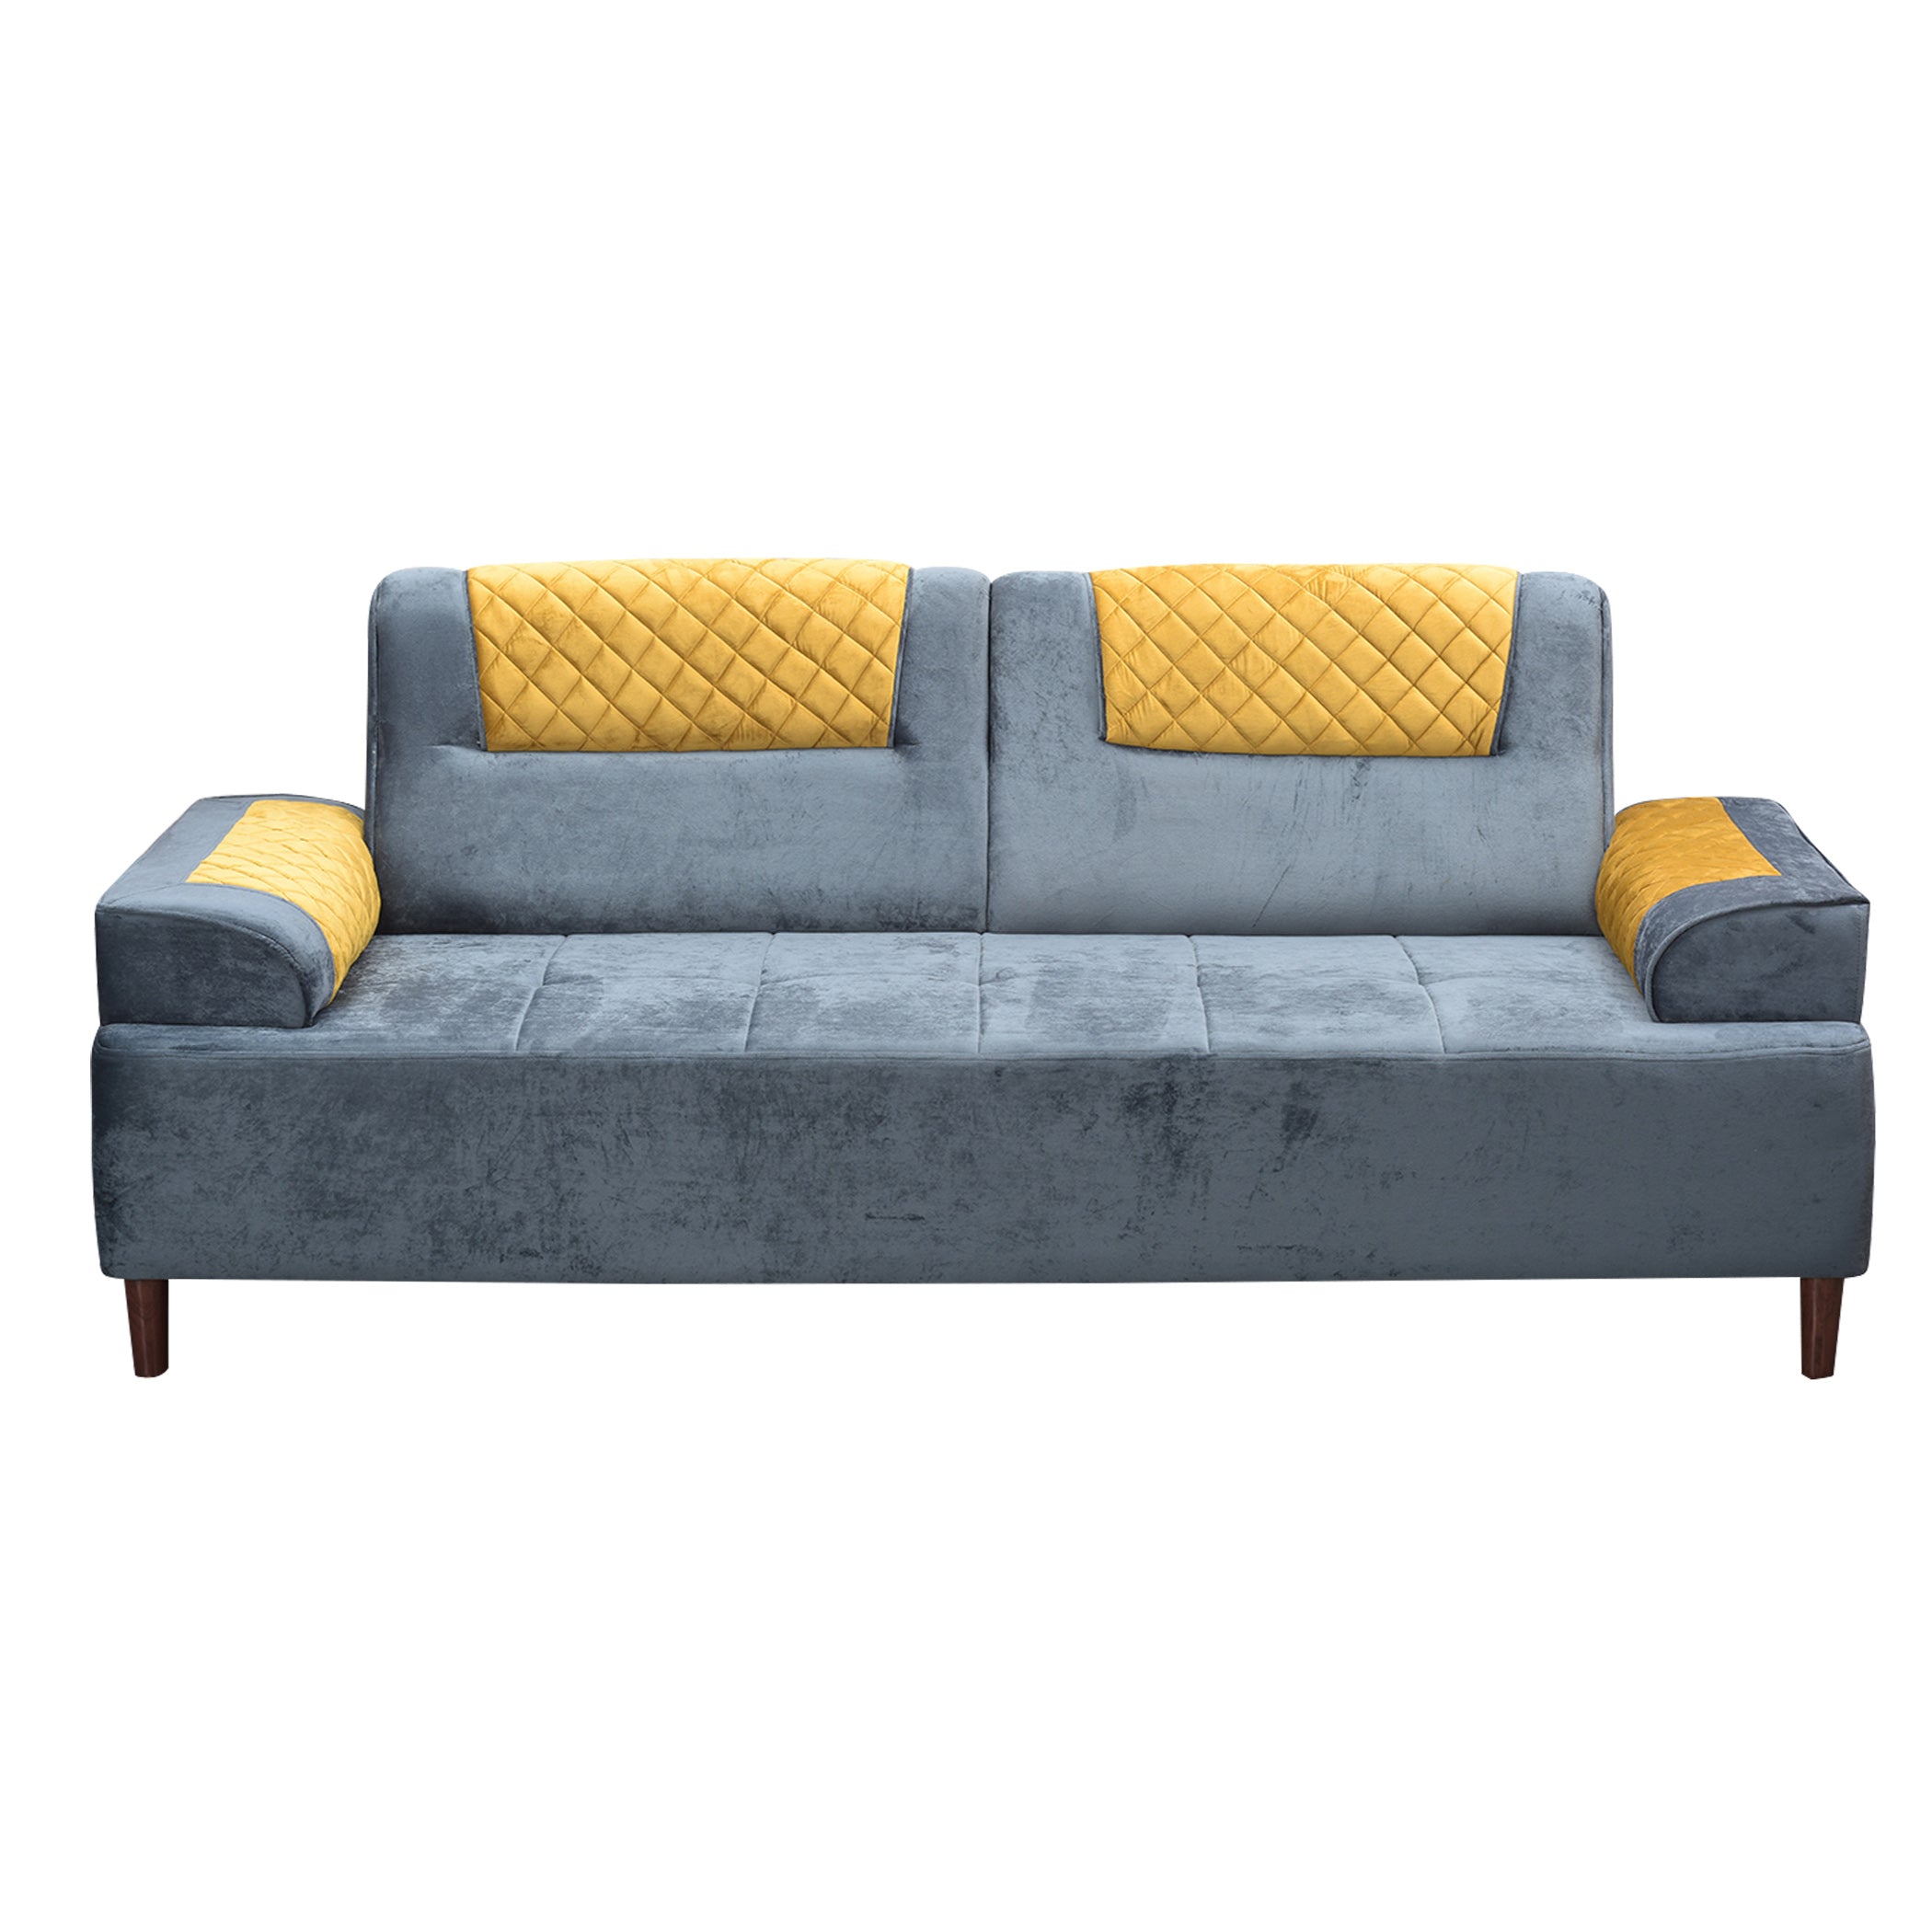 Austin GreyYellow 3S Sofa by Zorin Zorin